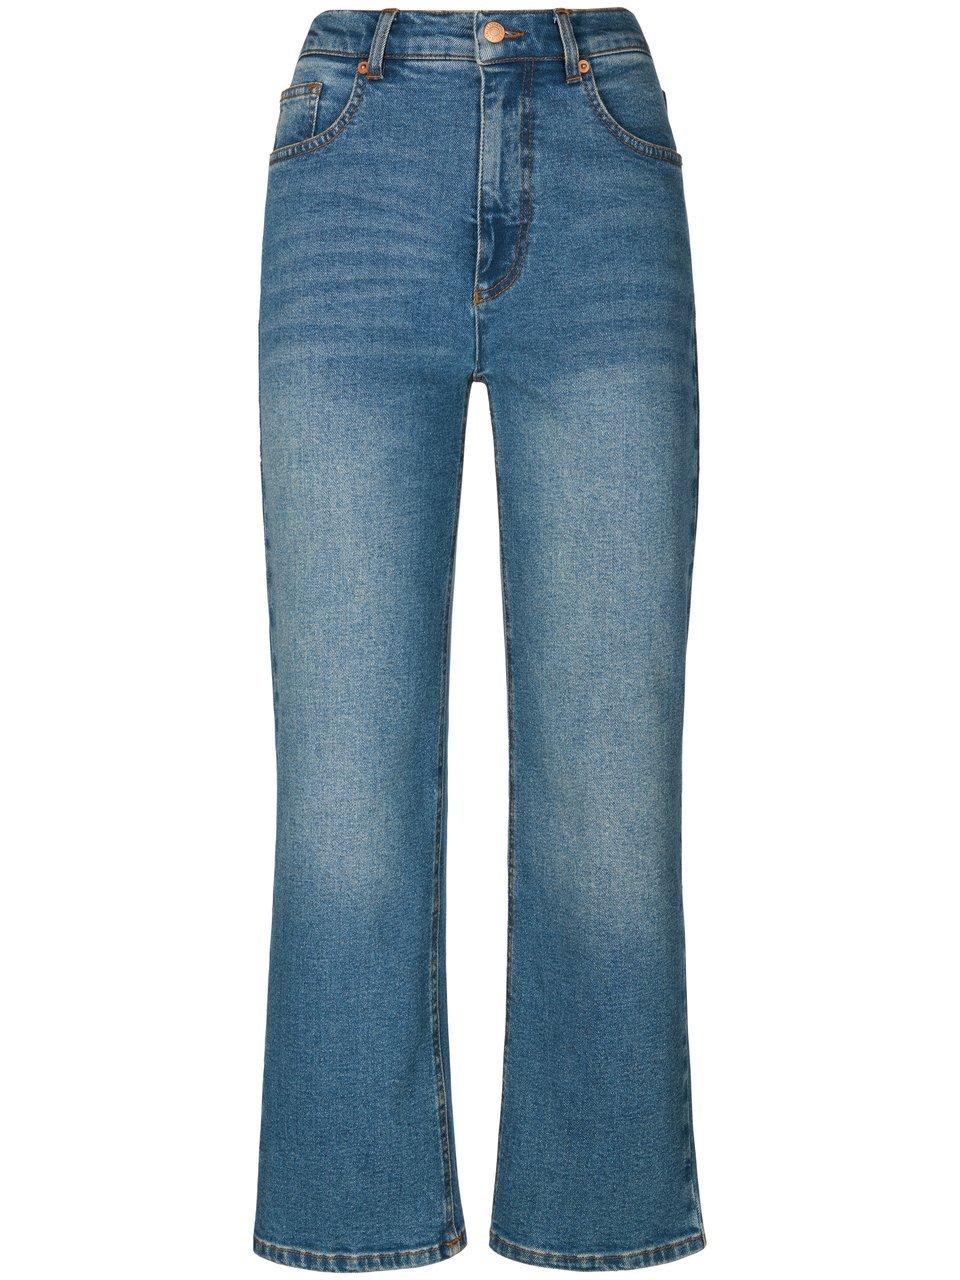 Enkellange jeans in five-pocketsmodel Van WALL London denim